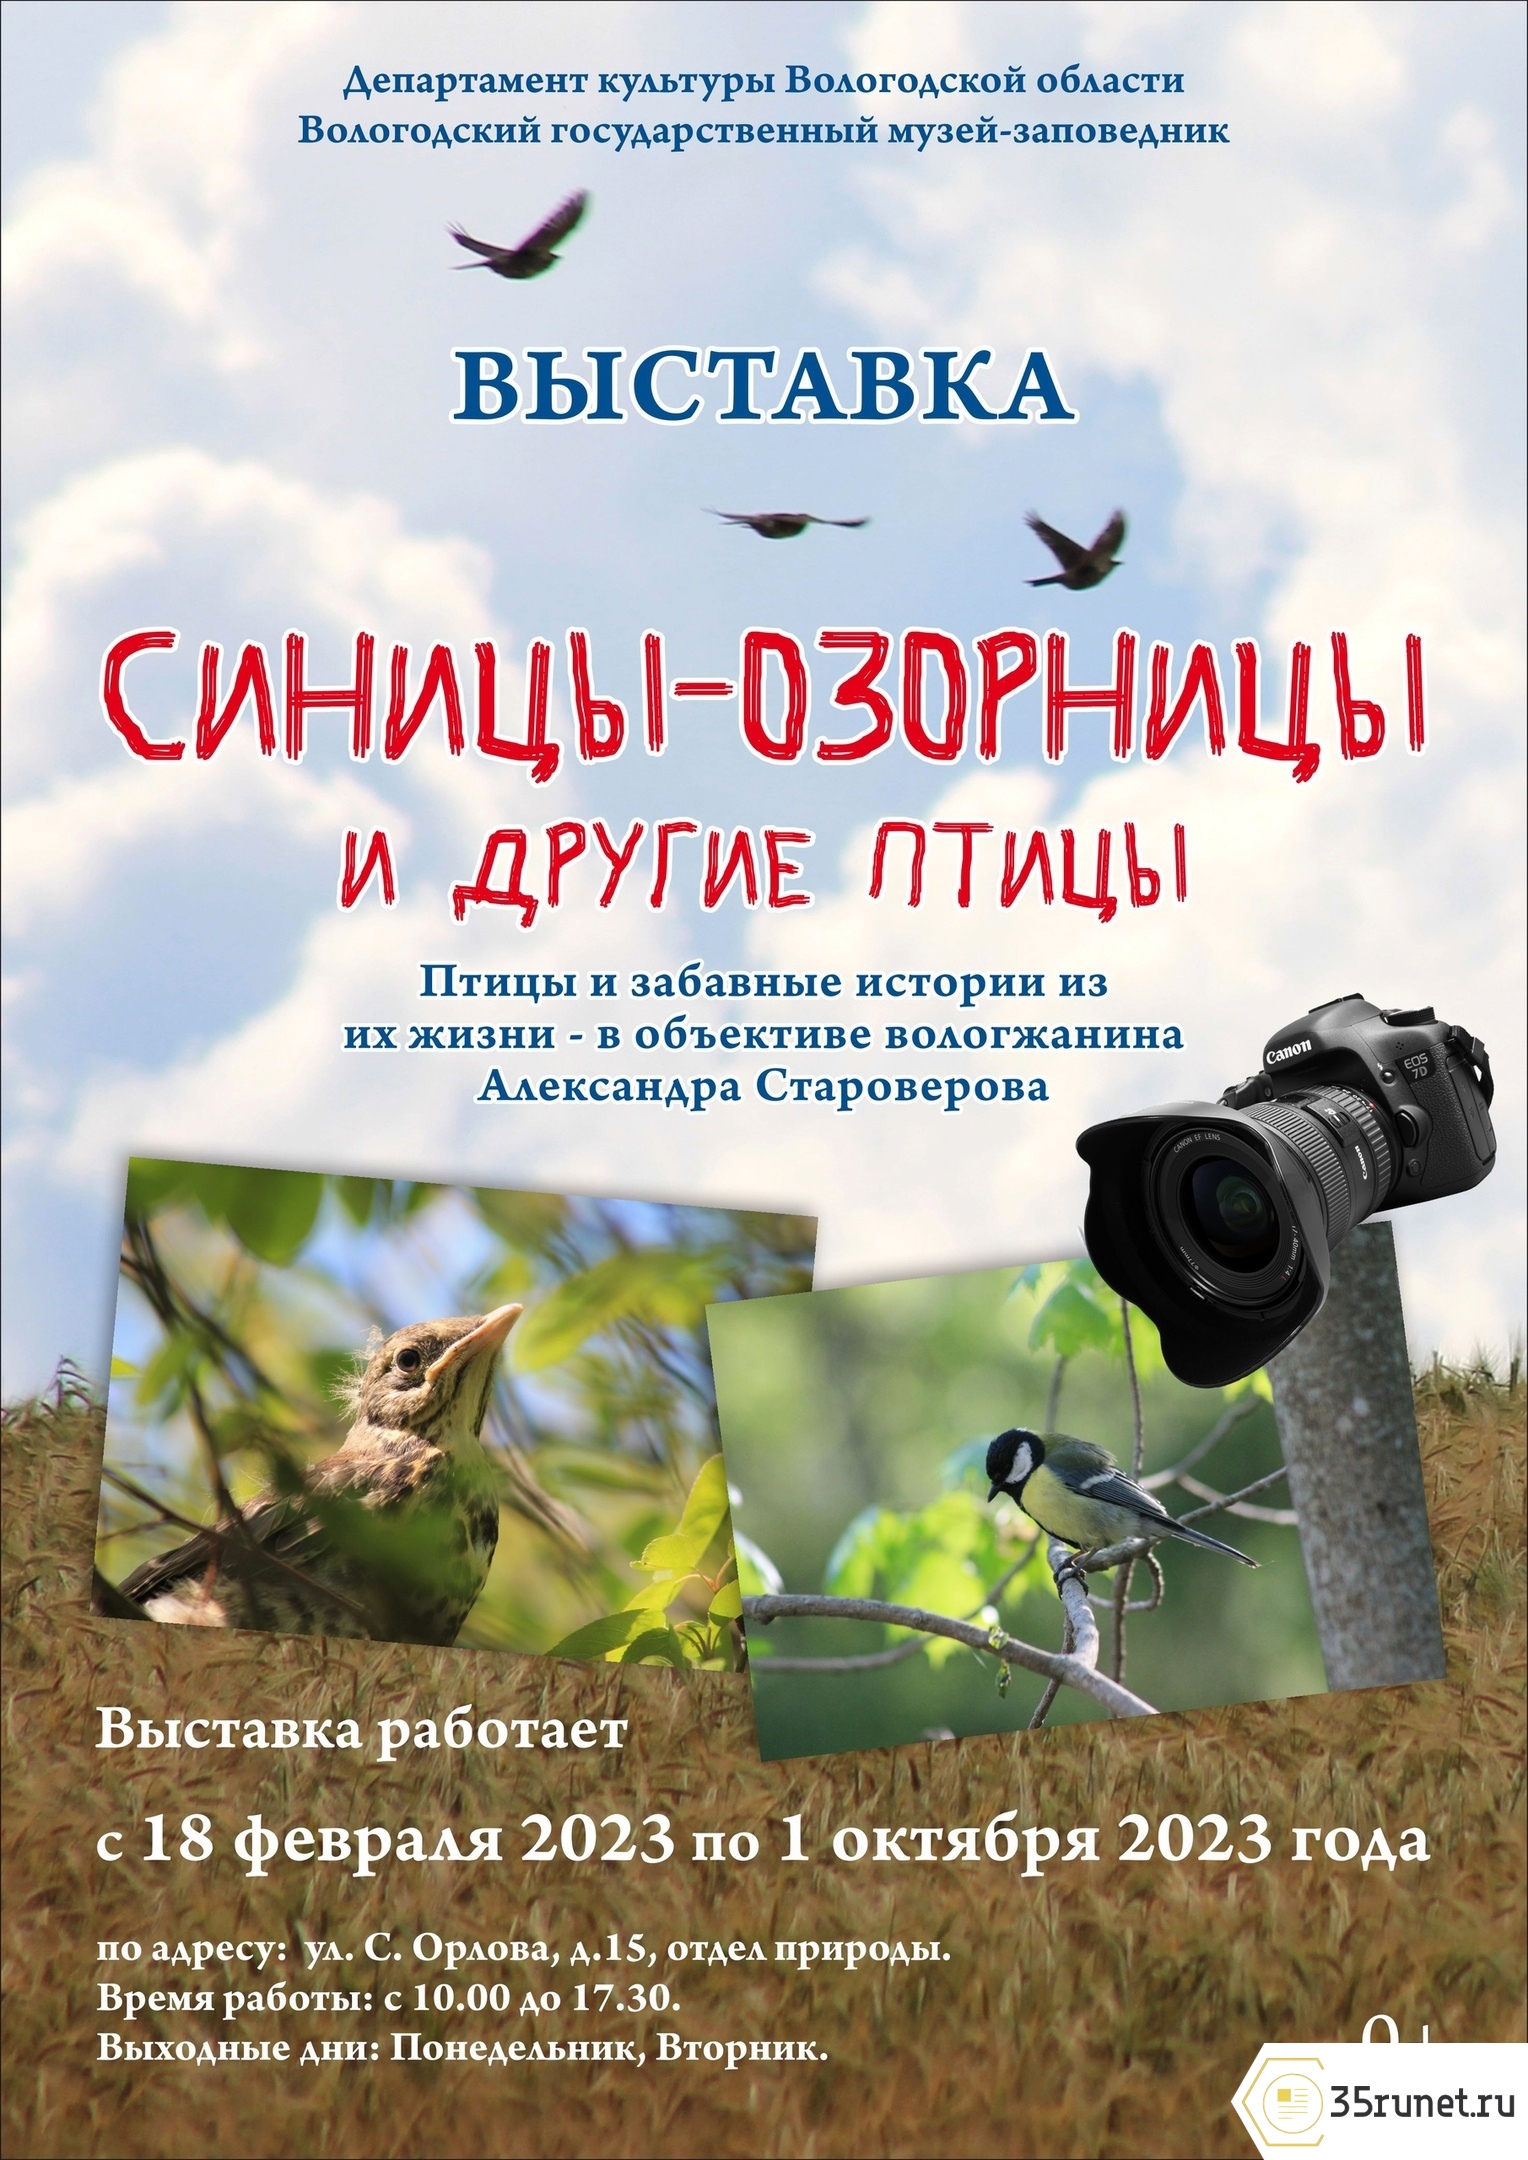 Выставка работ фотографа-натуралиста Александра Староверова откроется в Вологде 18 февраля